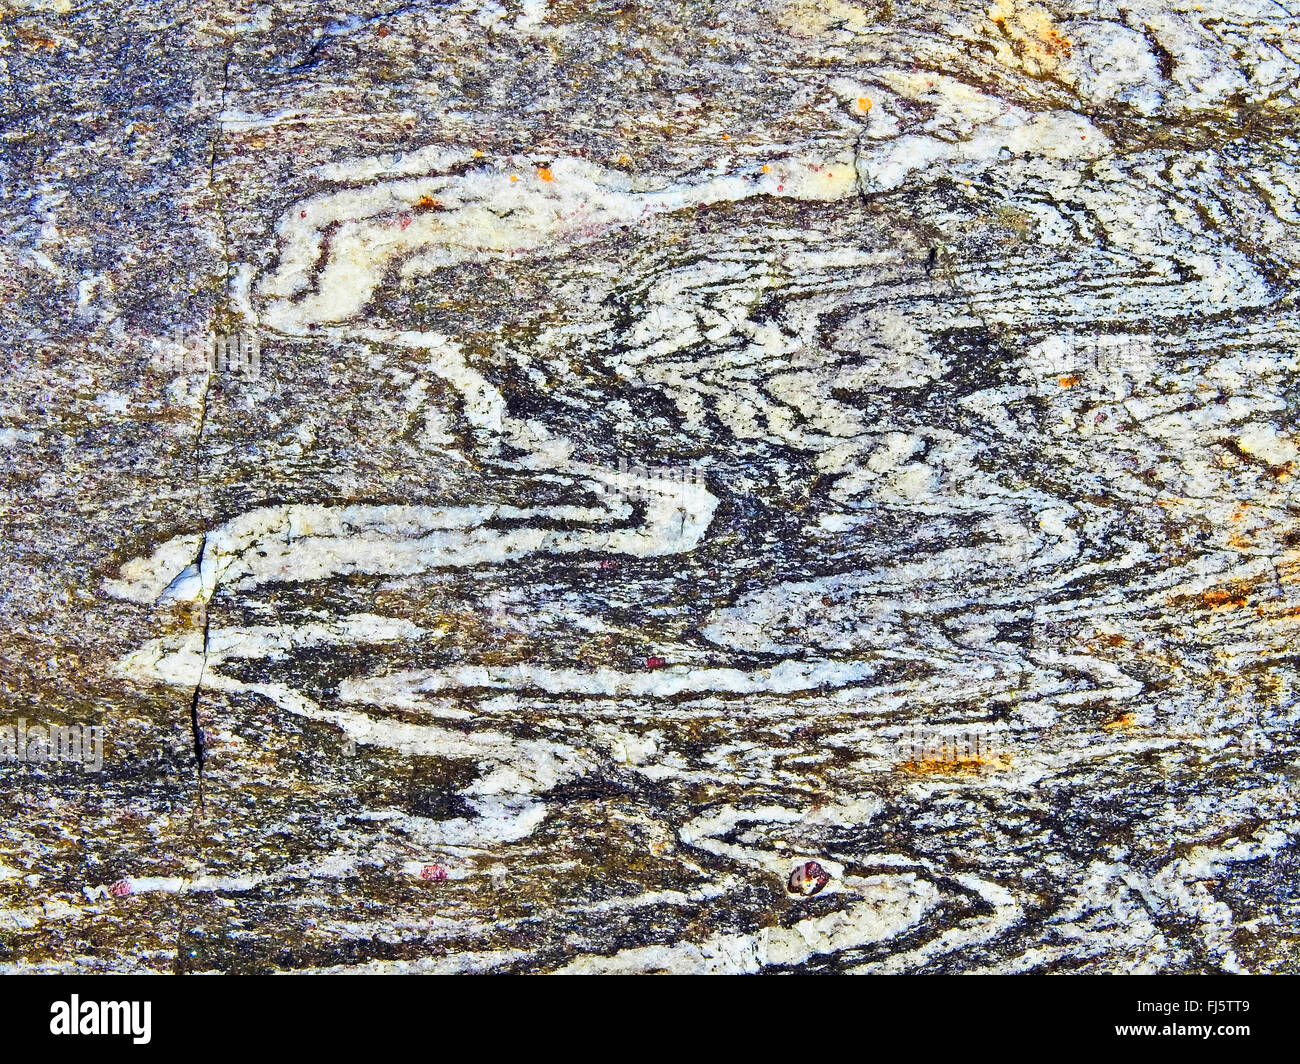 folds in rocks, Norway, Troms Stock Photo